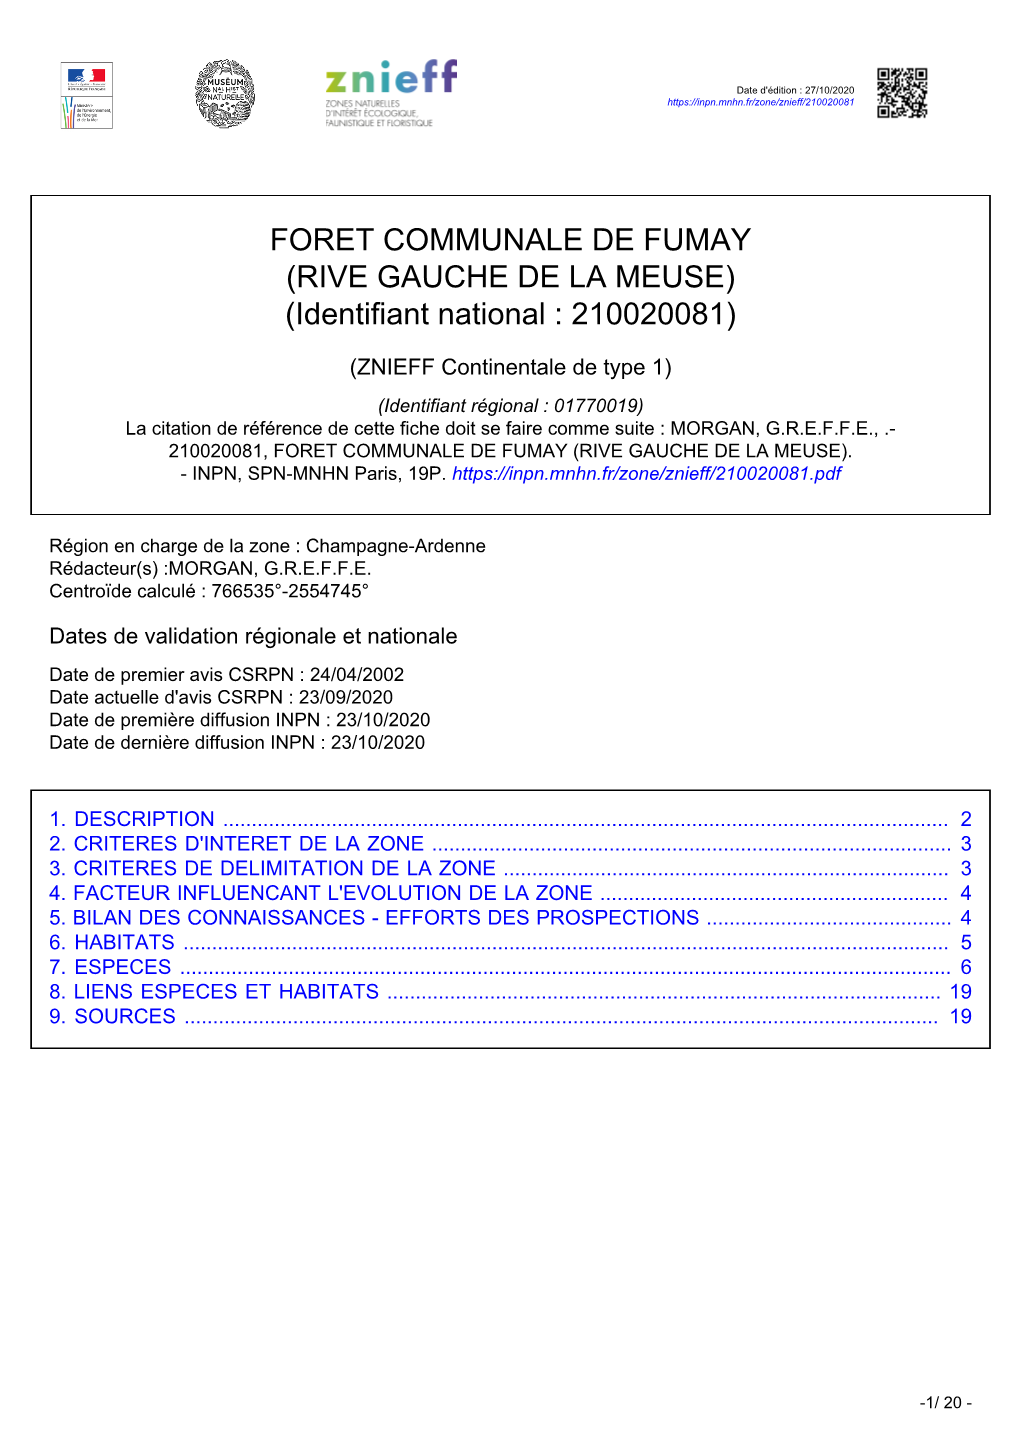 FORET COMMUNALE DE FUMAY (RIVE GAUCHE DE LA MEUSE) (Identifiant National : 210020081)